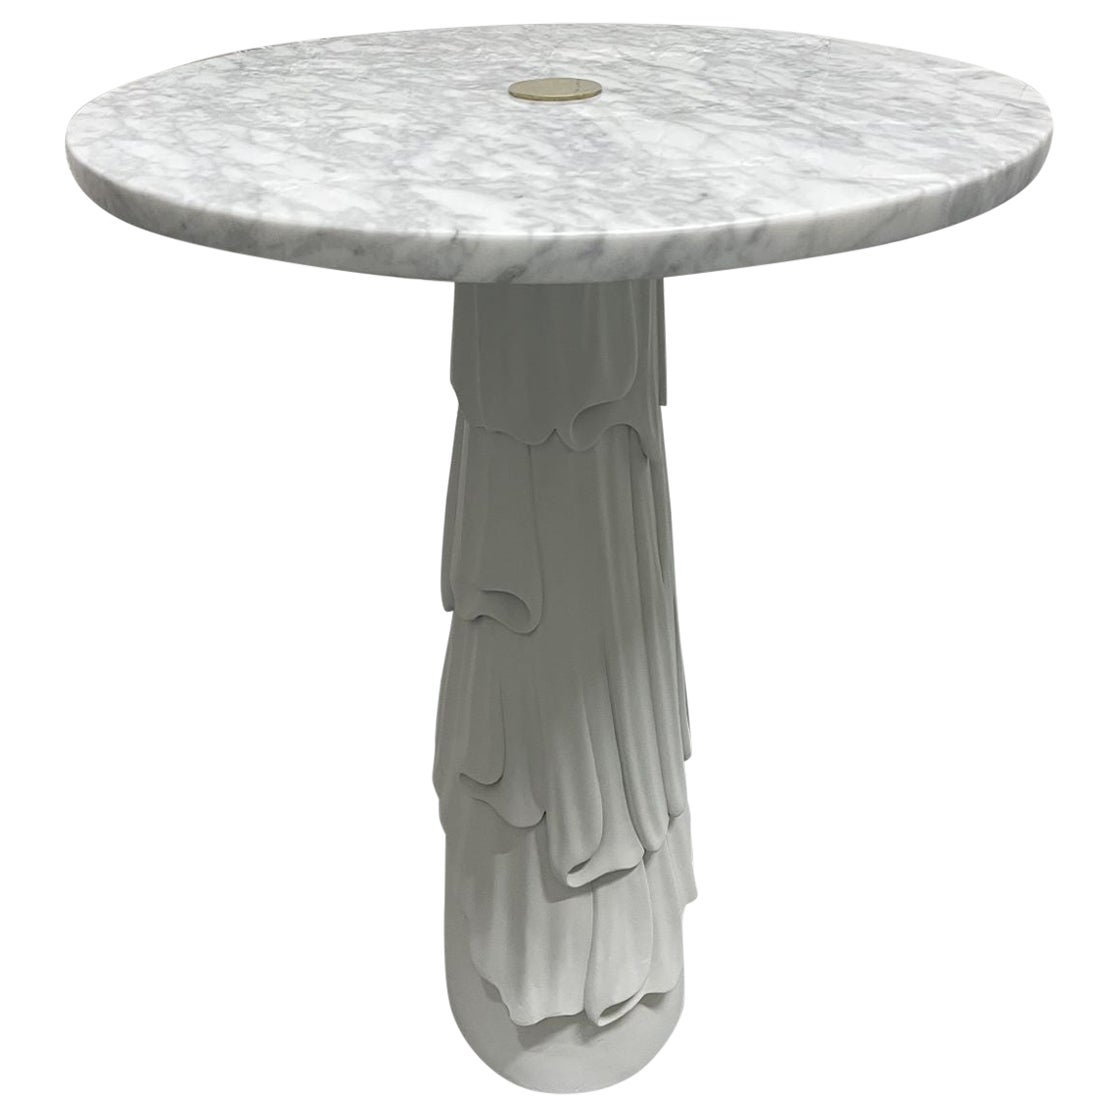 Table d'appoint décorative en marbre de Carrare de style Hollywood Regency